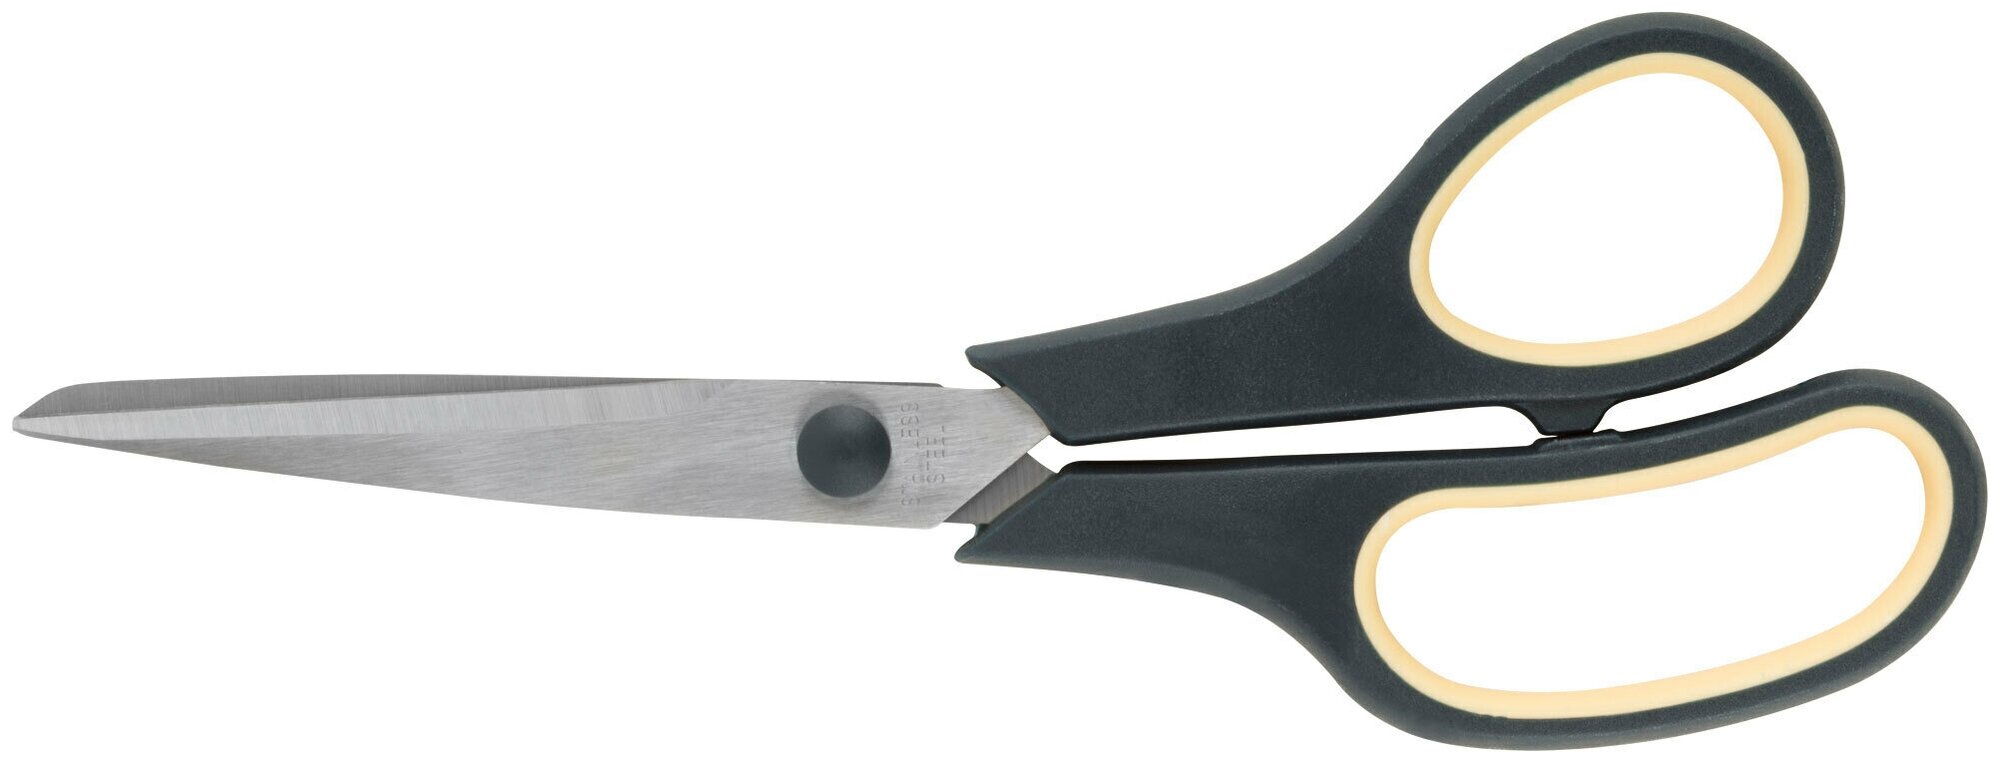 Ножницы бытовые нержавеющие, прорезиненные ручки, толщина лезвия 1,8 мм, 225 мм 67377